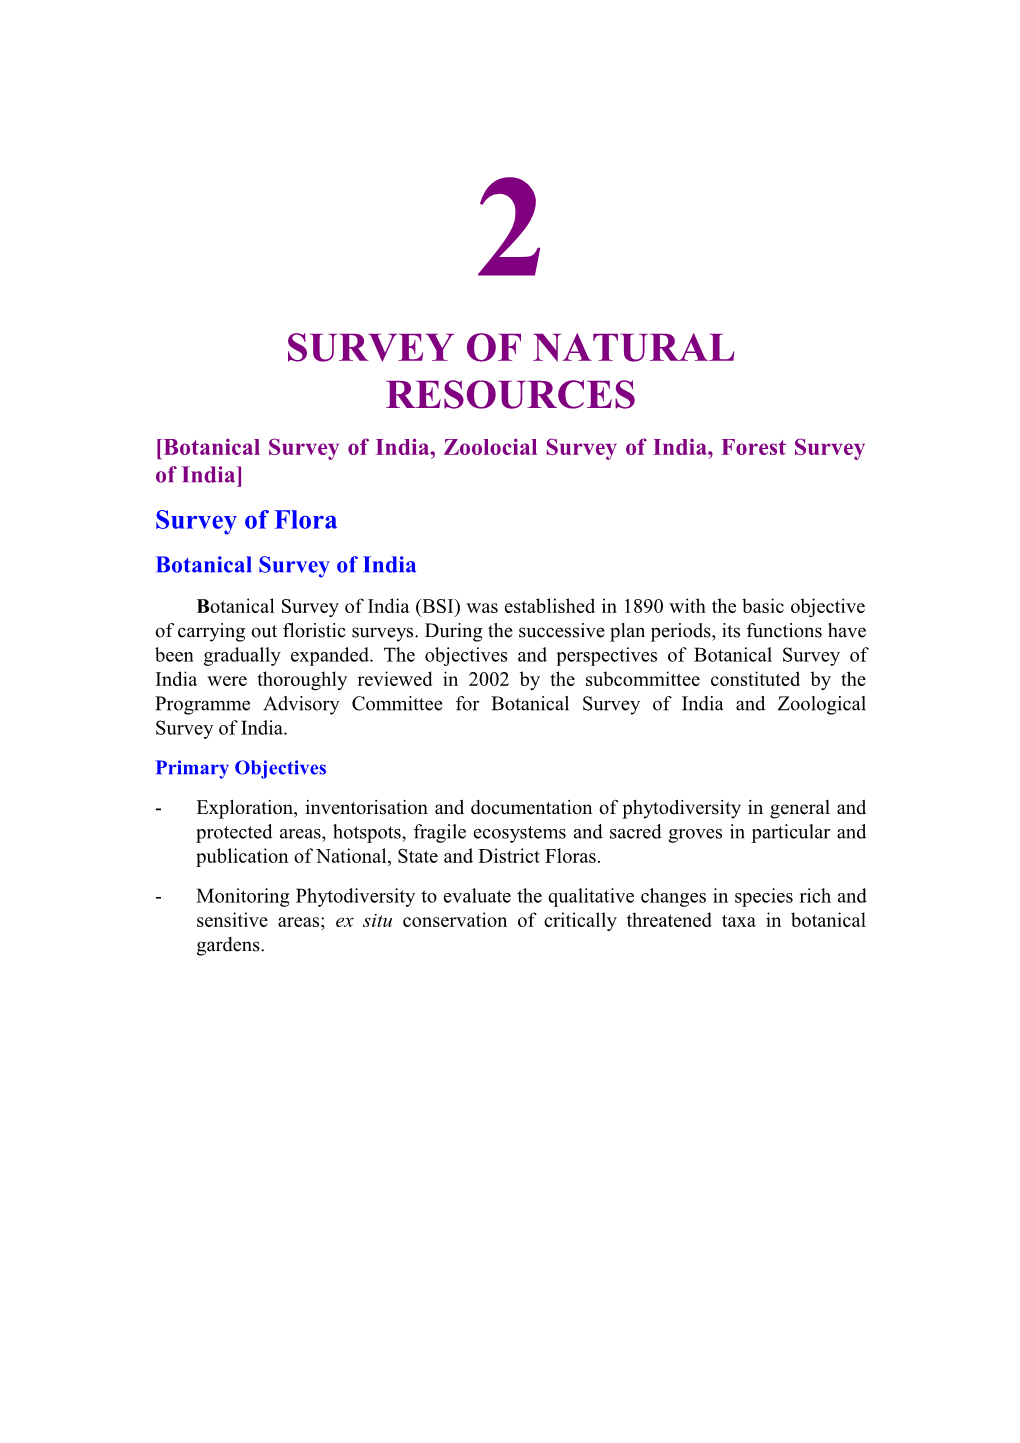 Botanical Survey of India, Zoolocial Survey of India, Forest Survey of India